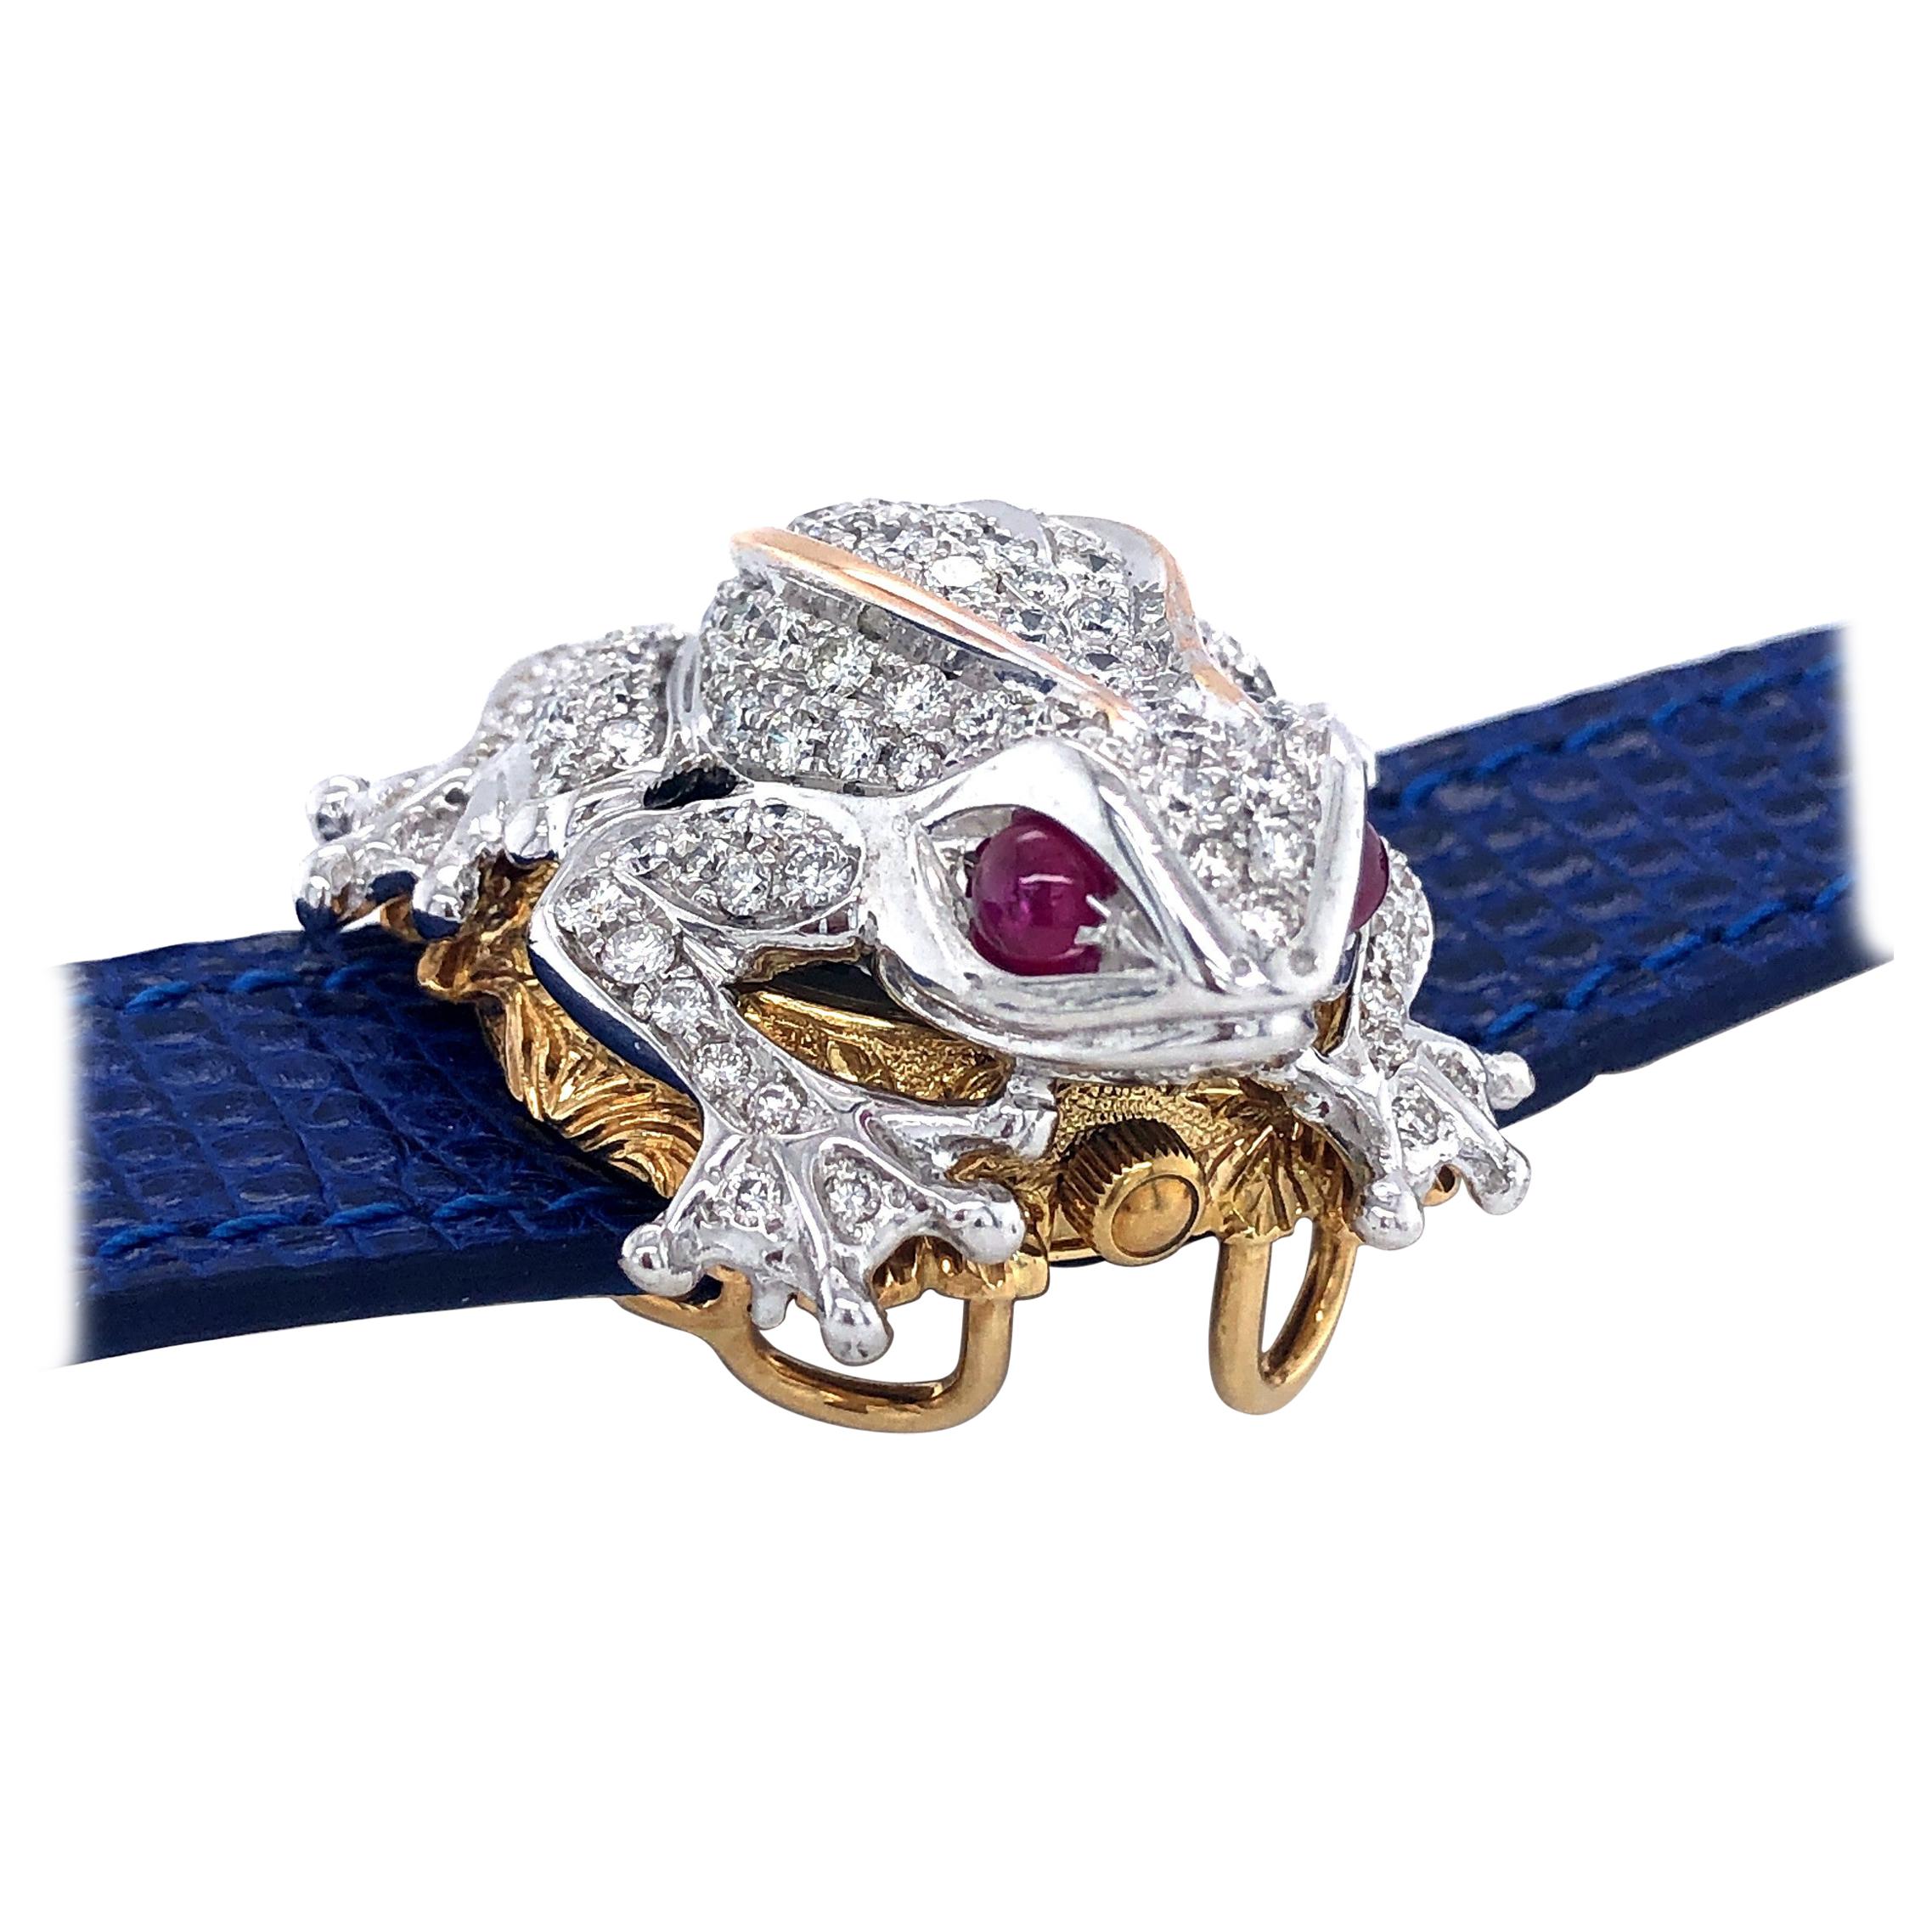 Zannetti Rana Scrigno Jewel Frog Wrist Watch / Bracelet, Diamonds & Ruby's For Sale